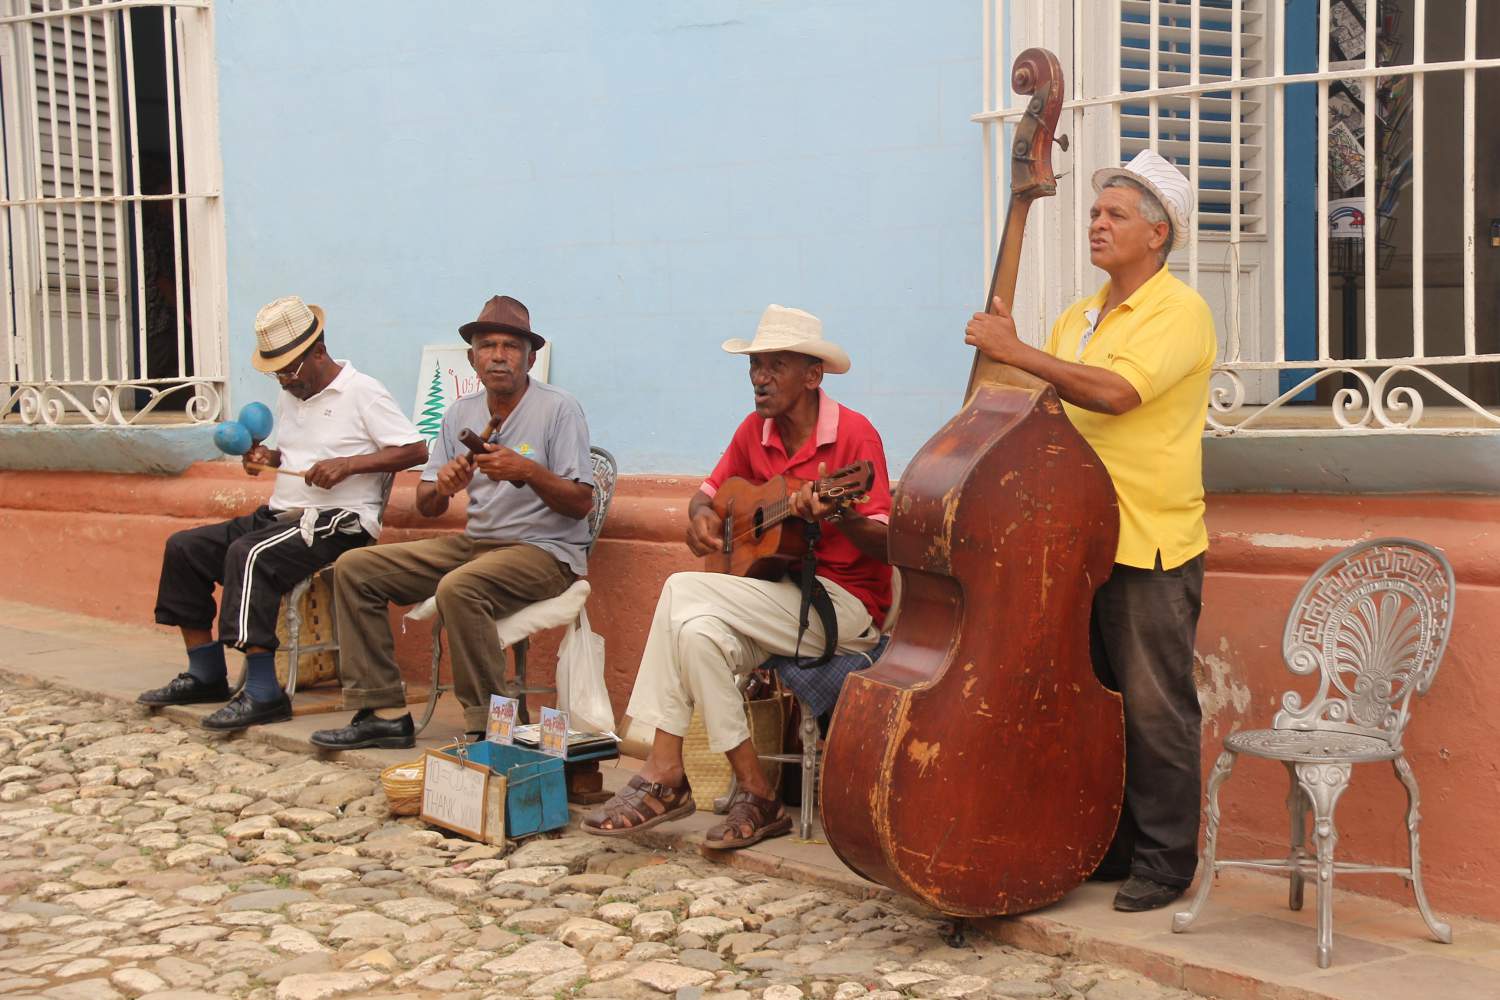 Musicians in the street near Casa de la Mùsica in Trinidad, Cuba